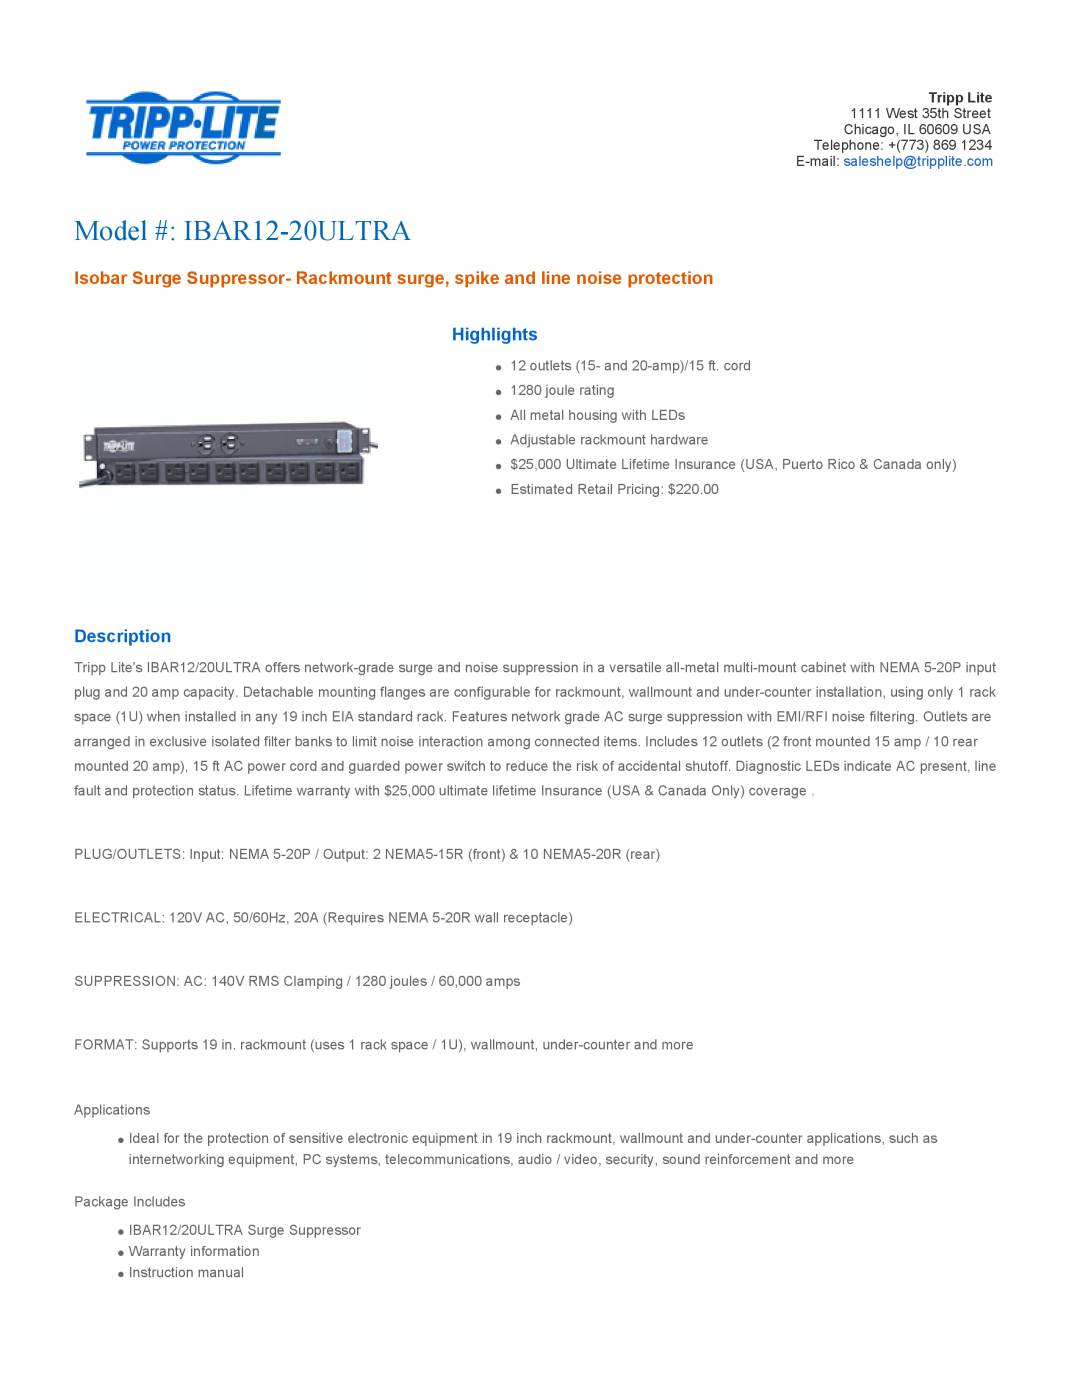 Tripp Lite warranty Highlights, Description, Model # IBAR12-20ULTRA 